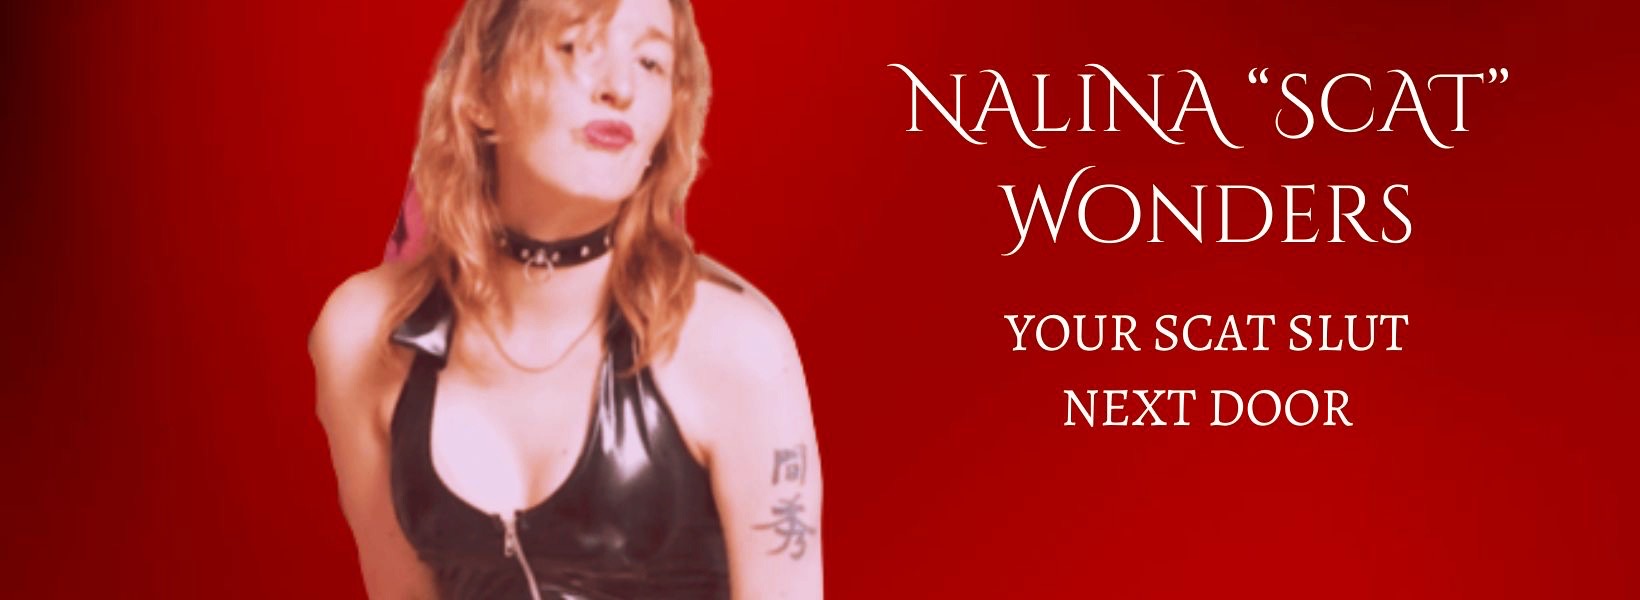 Scat model pornstar Nalina Scat Wonders - Your scat slut next door